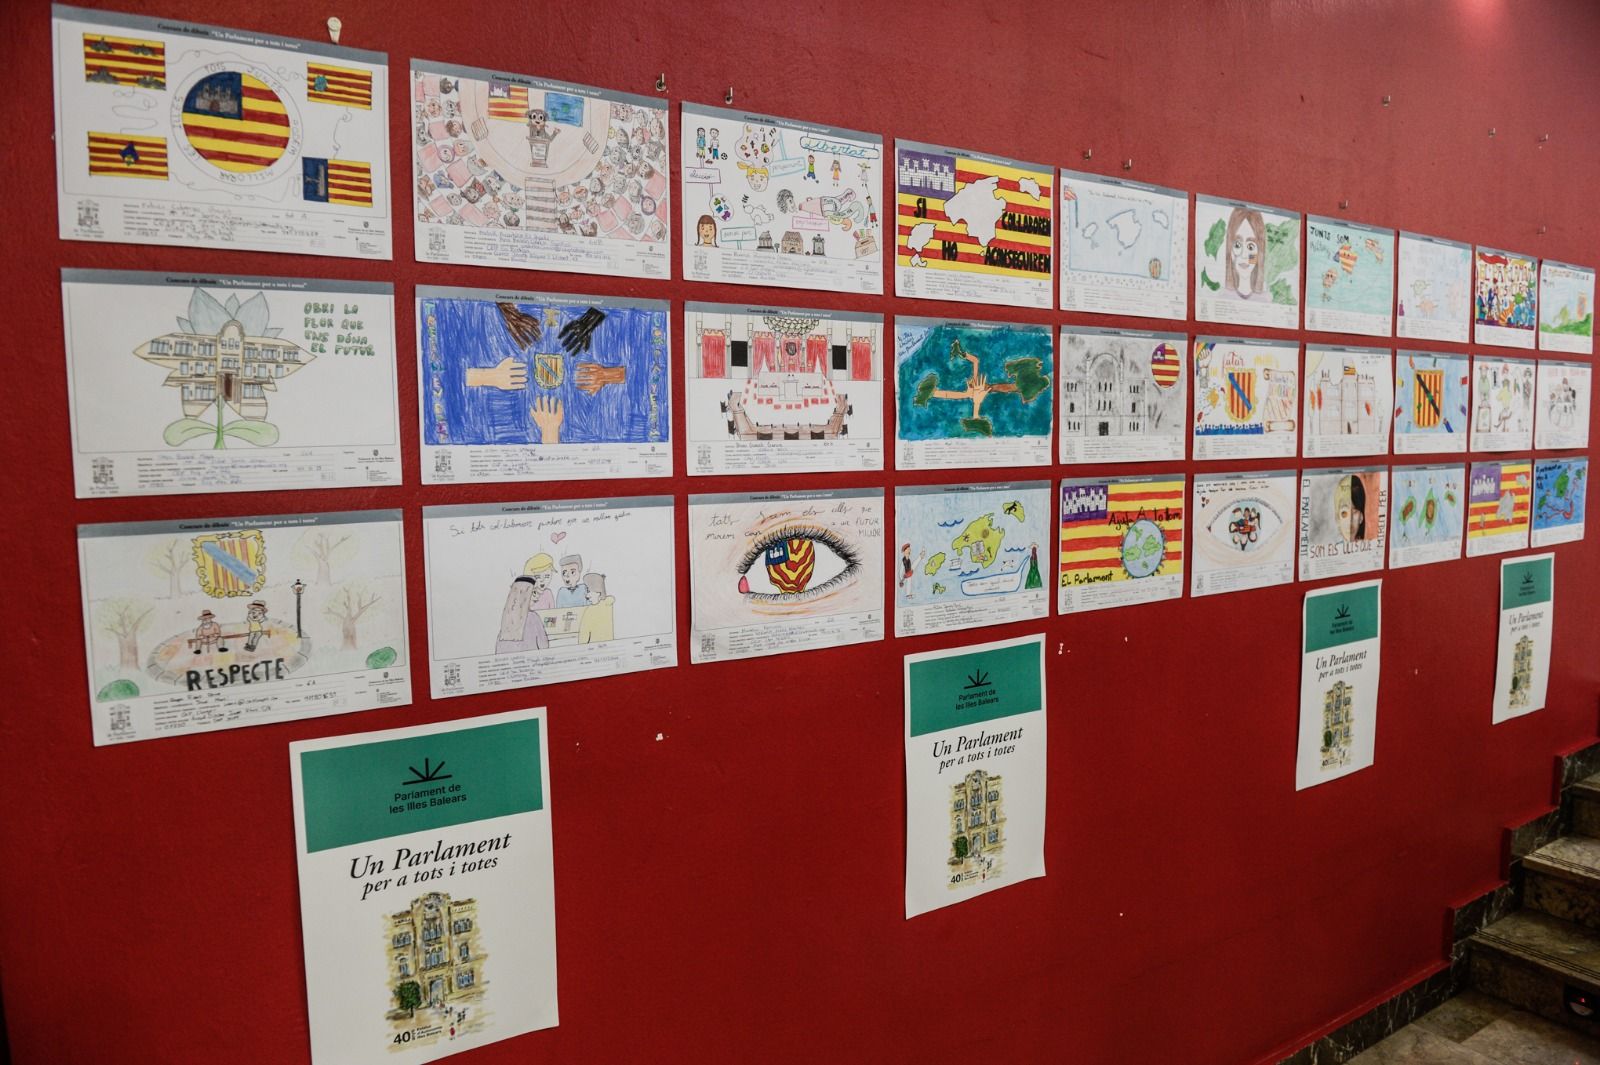 Galería de imágenes del concurso de pintura y redacción del Parlament en Ibiza